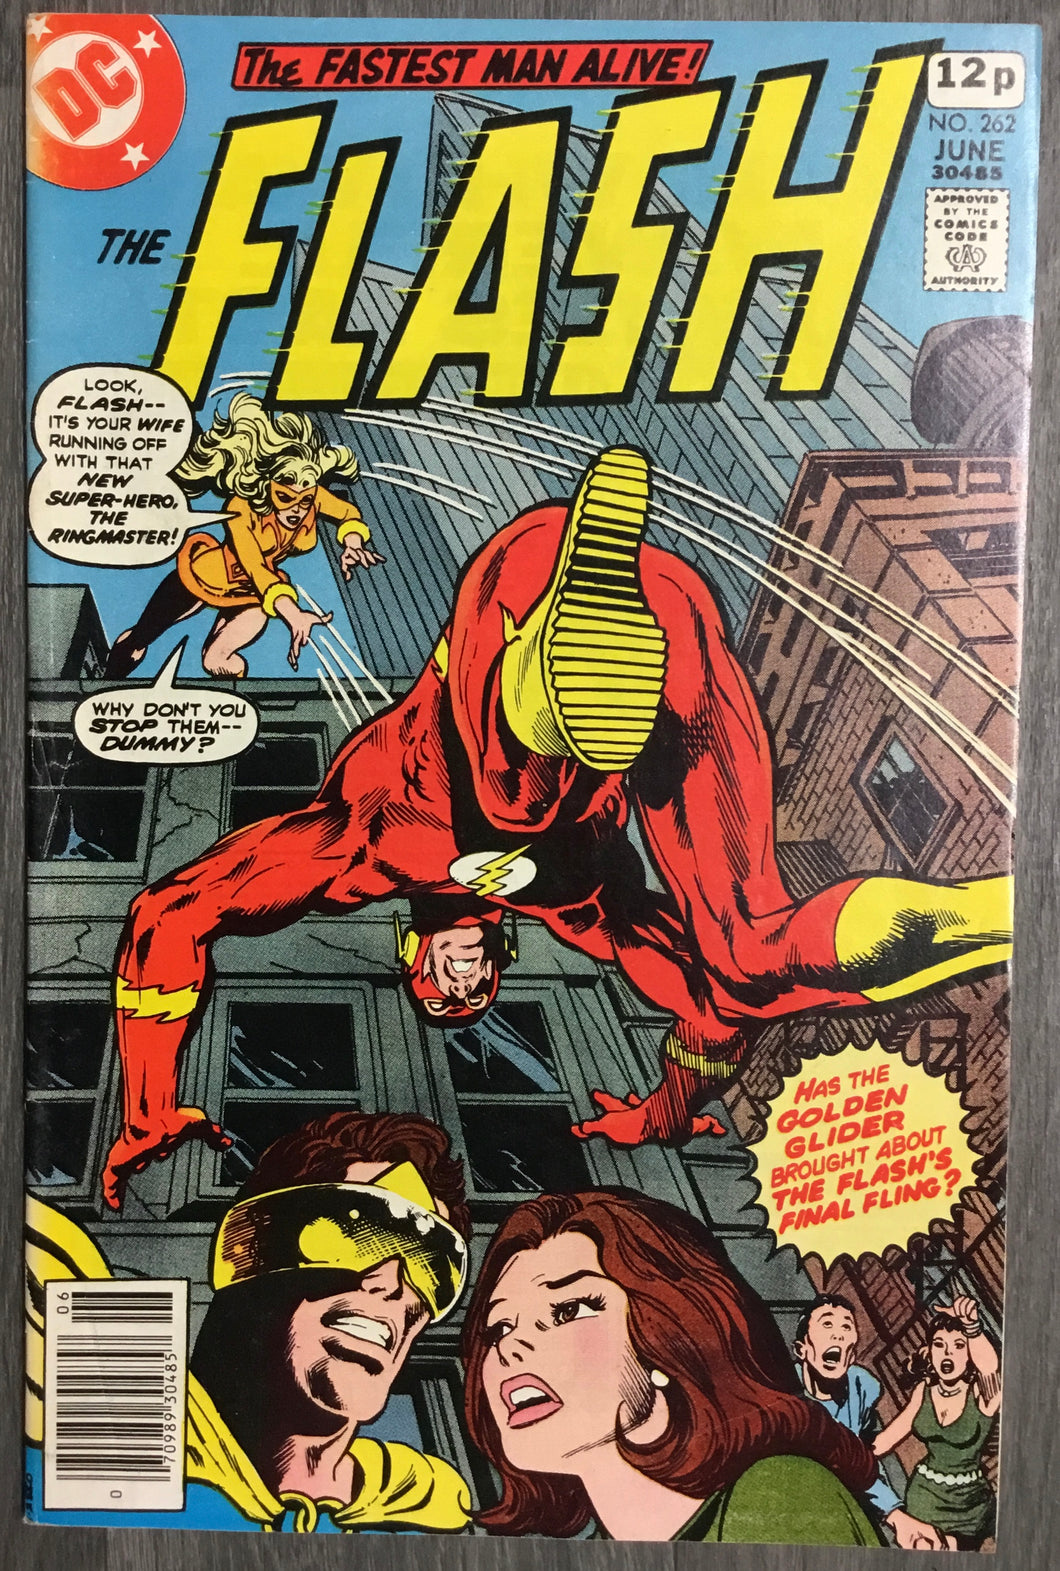 The Flash No. #262 1978 DC Comics